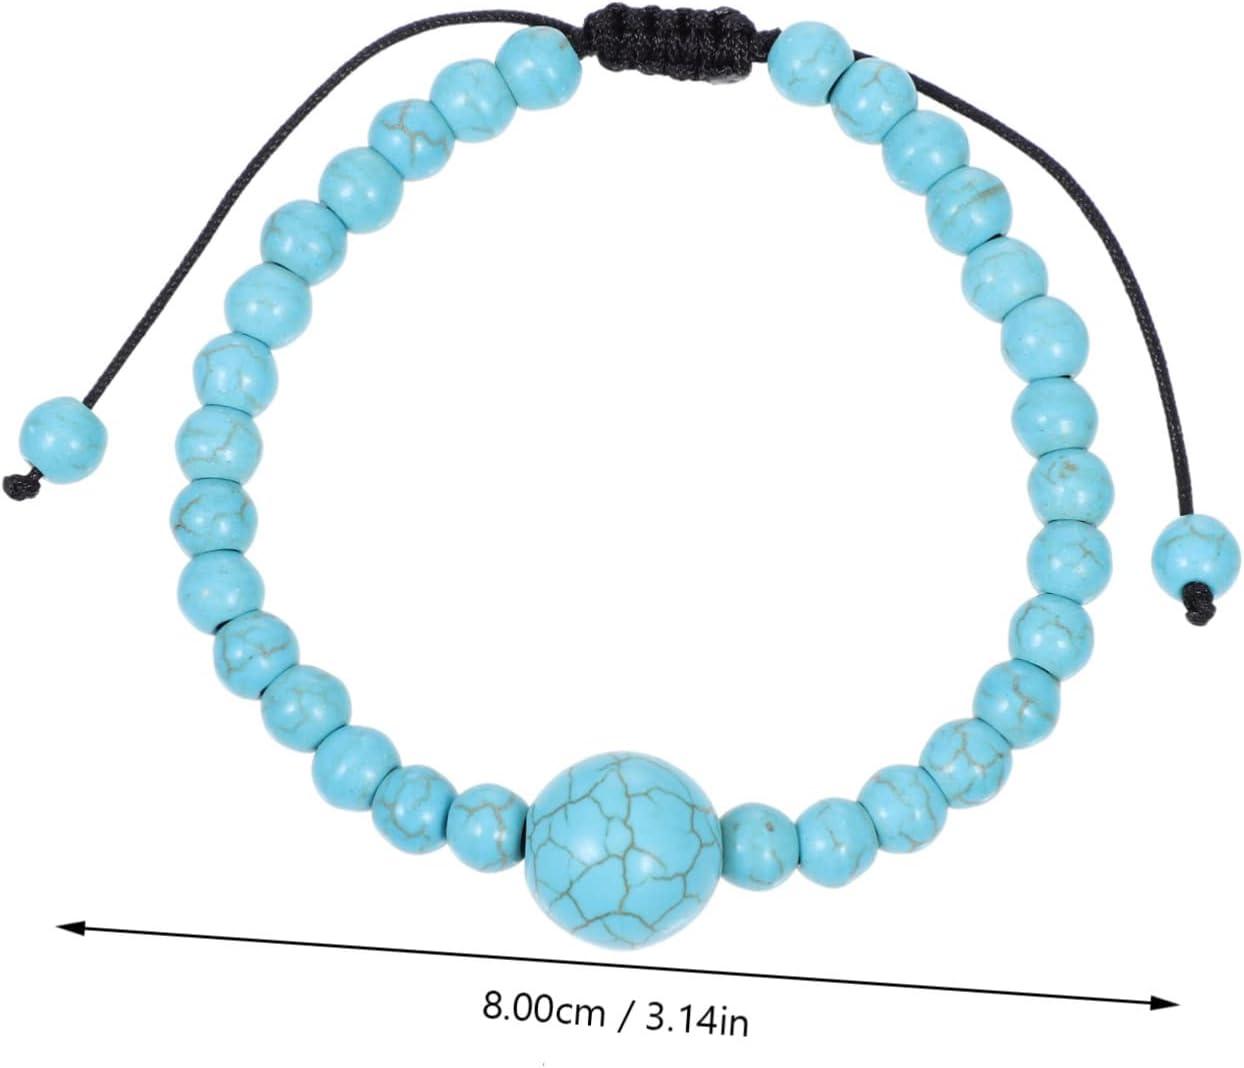 FOYTOKI 4pcs Anti Motion Sickness Bracelet Jewelry String for